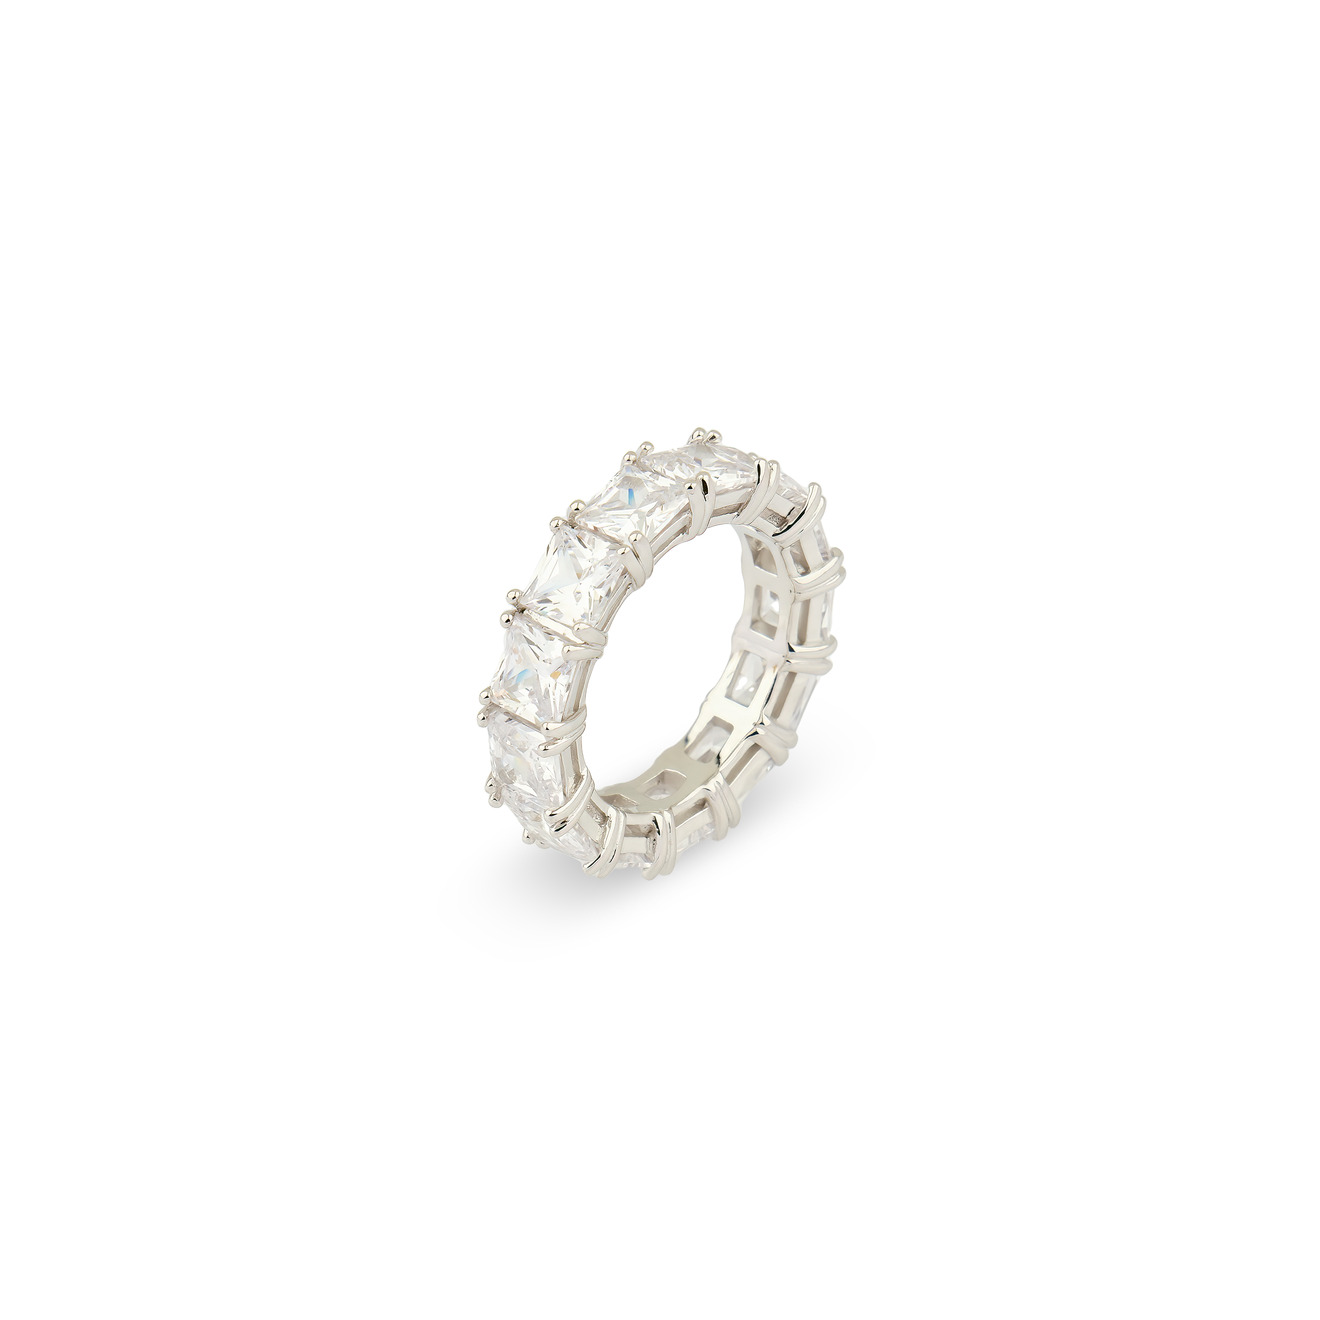 Holy Silver Кольцо из серебра с дорожкой из белых кристаллов holy silver кольцо дорожка из розовых и белых кристаллов разной формы